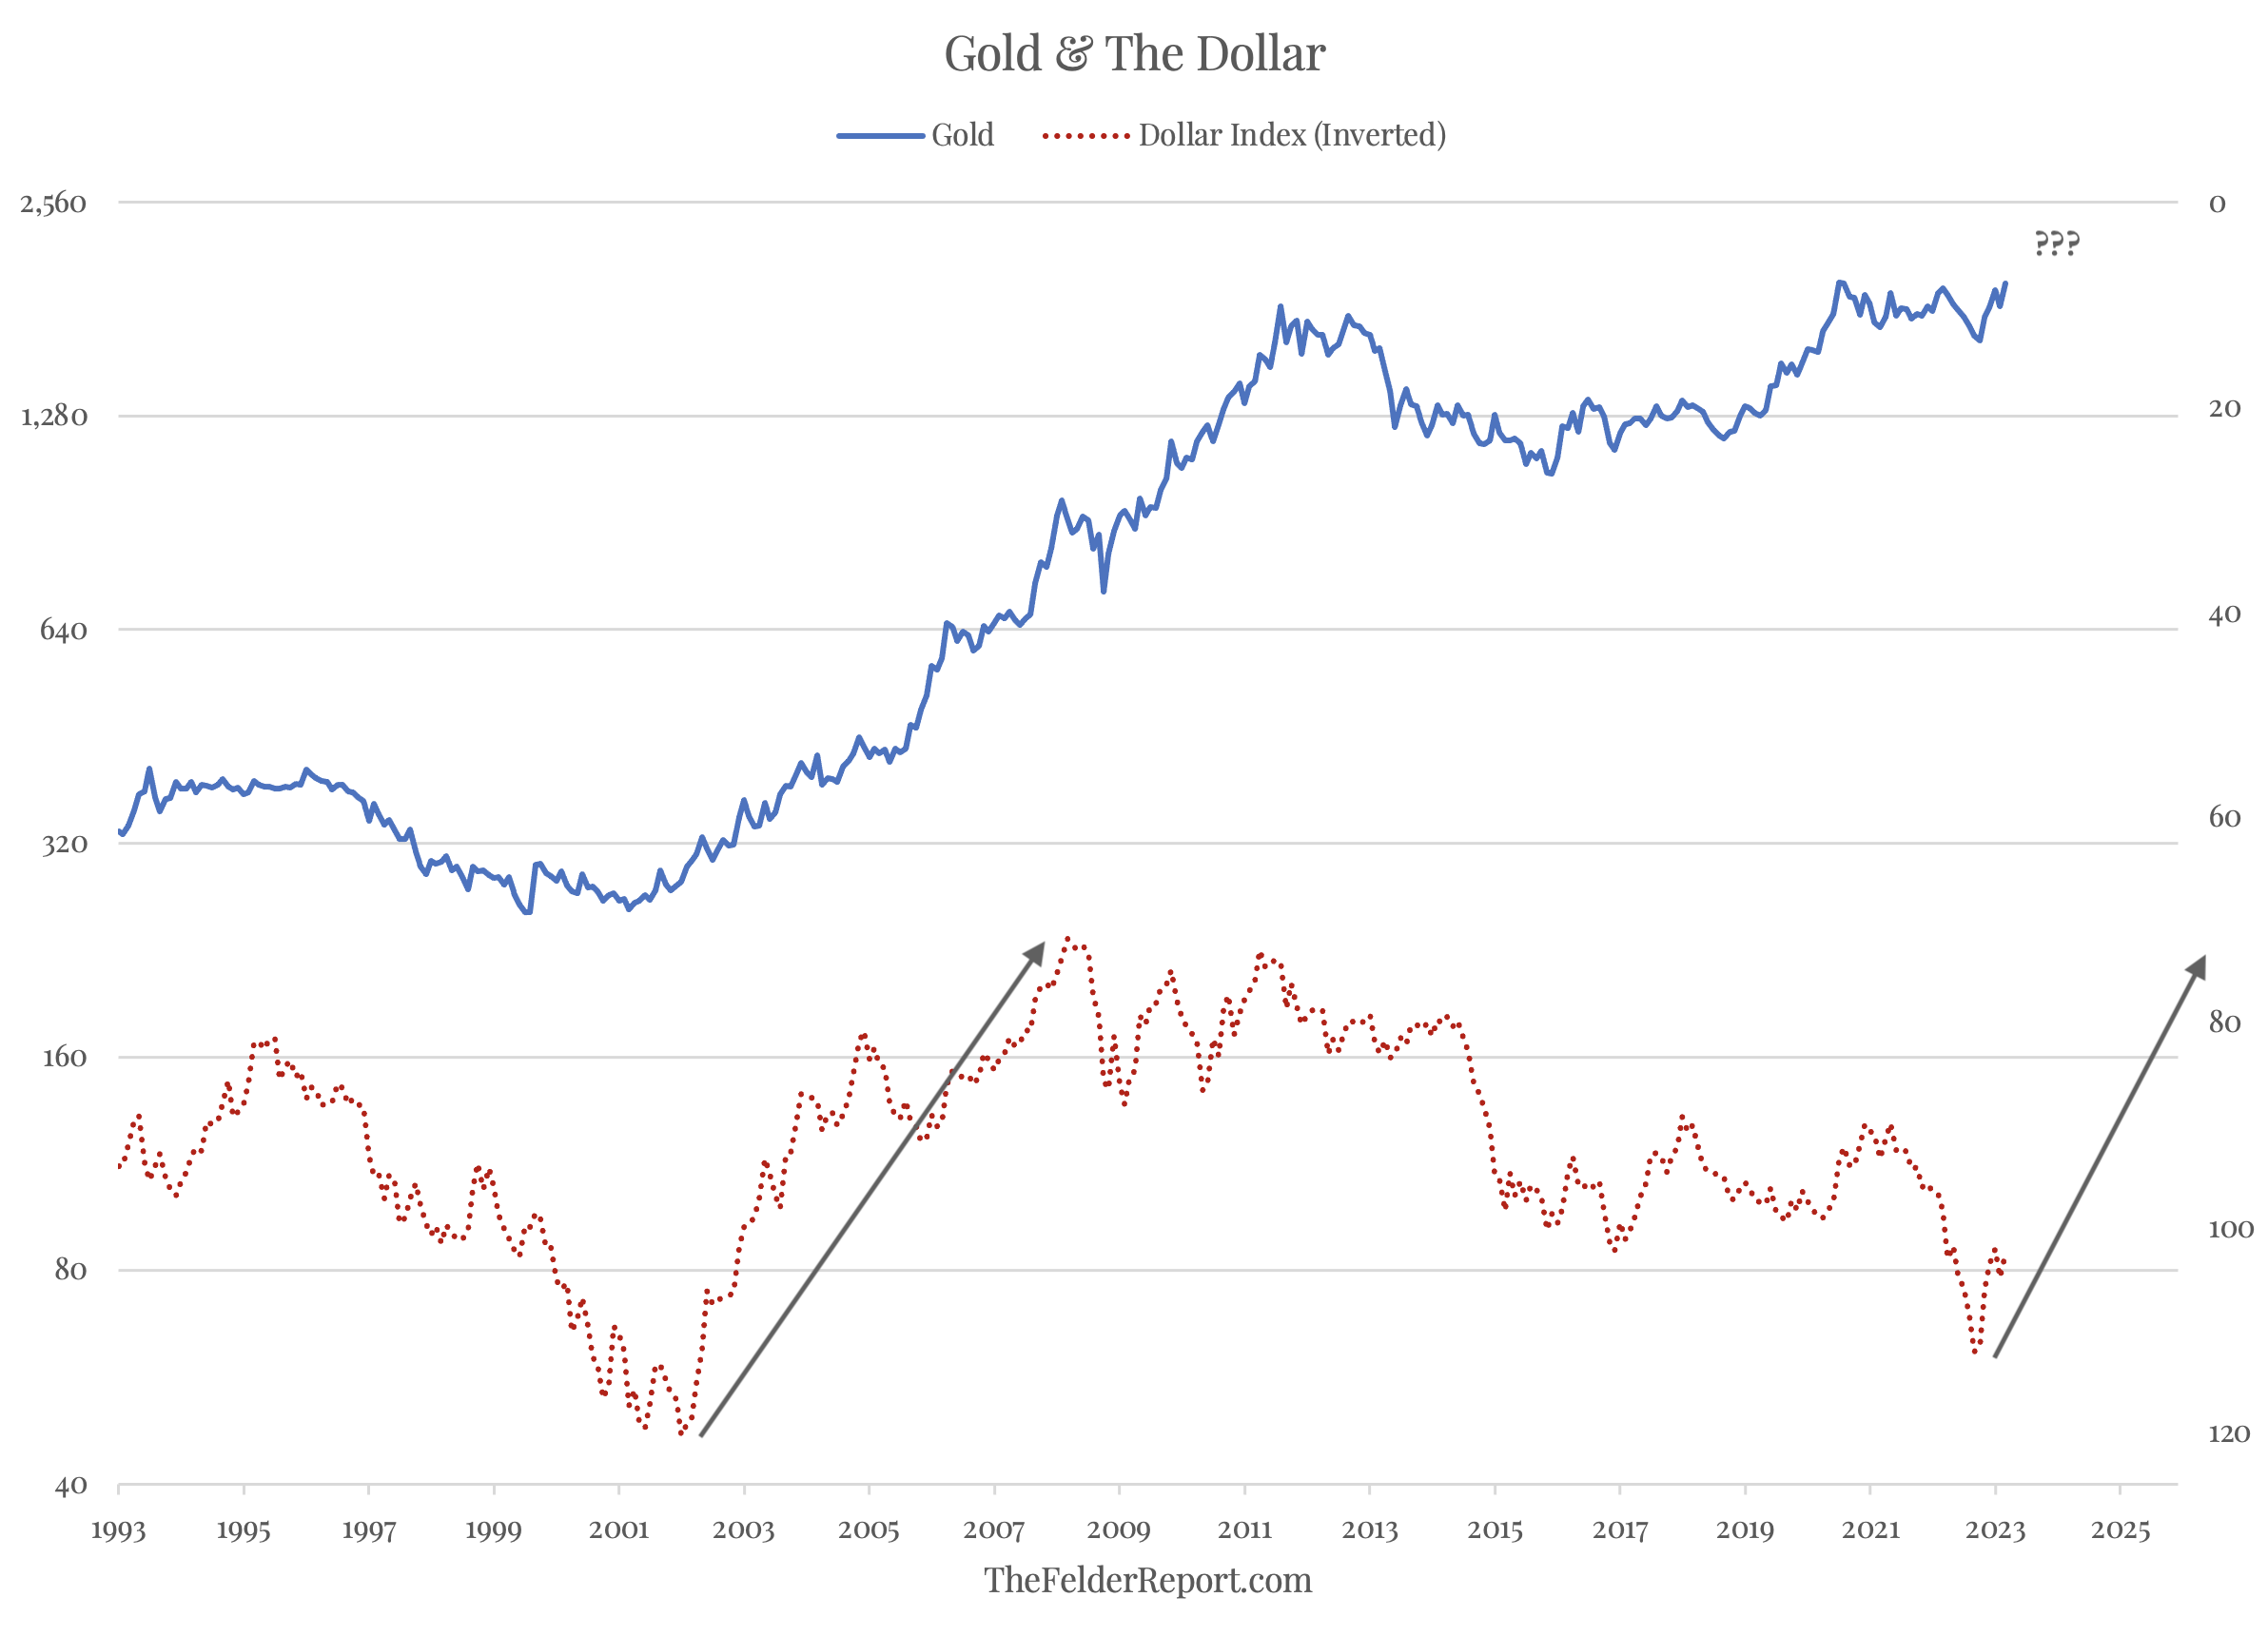 Gold vs Dollar Index